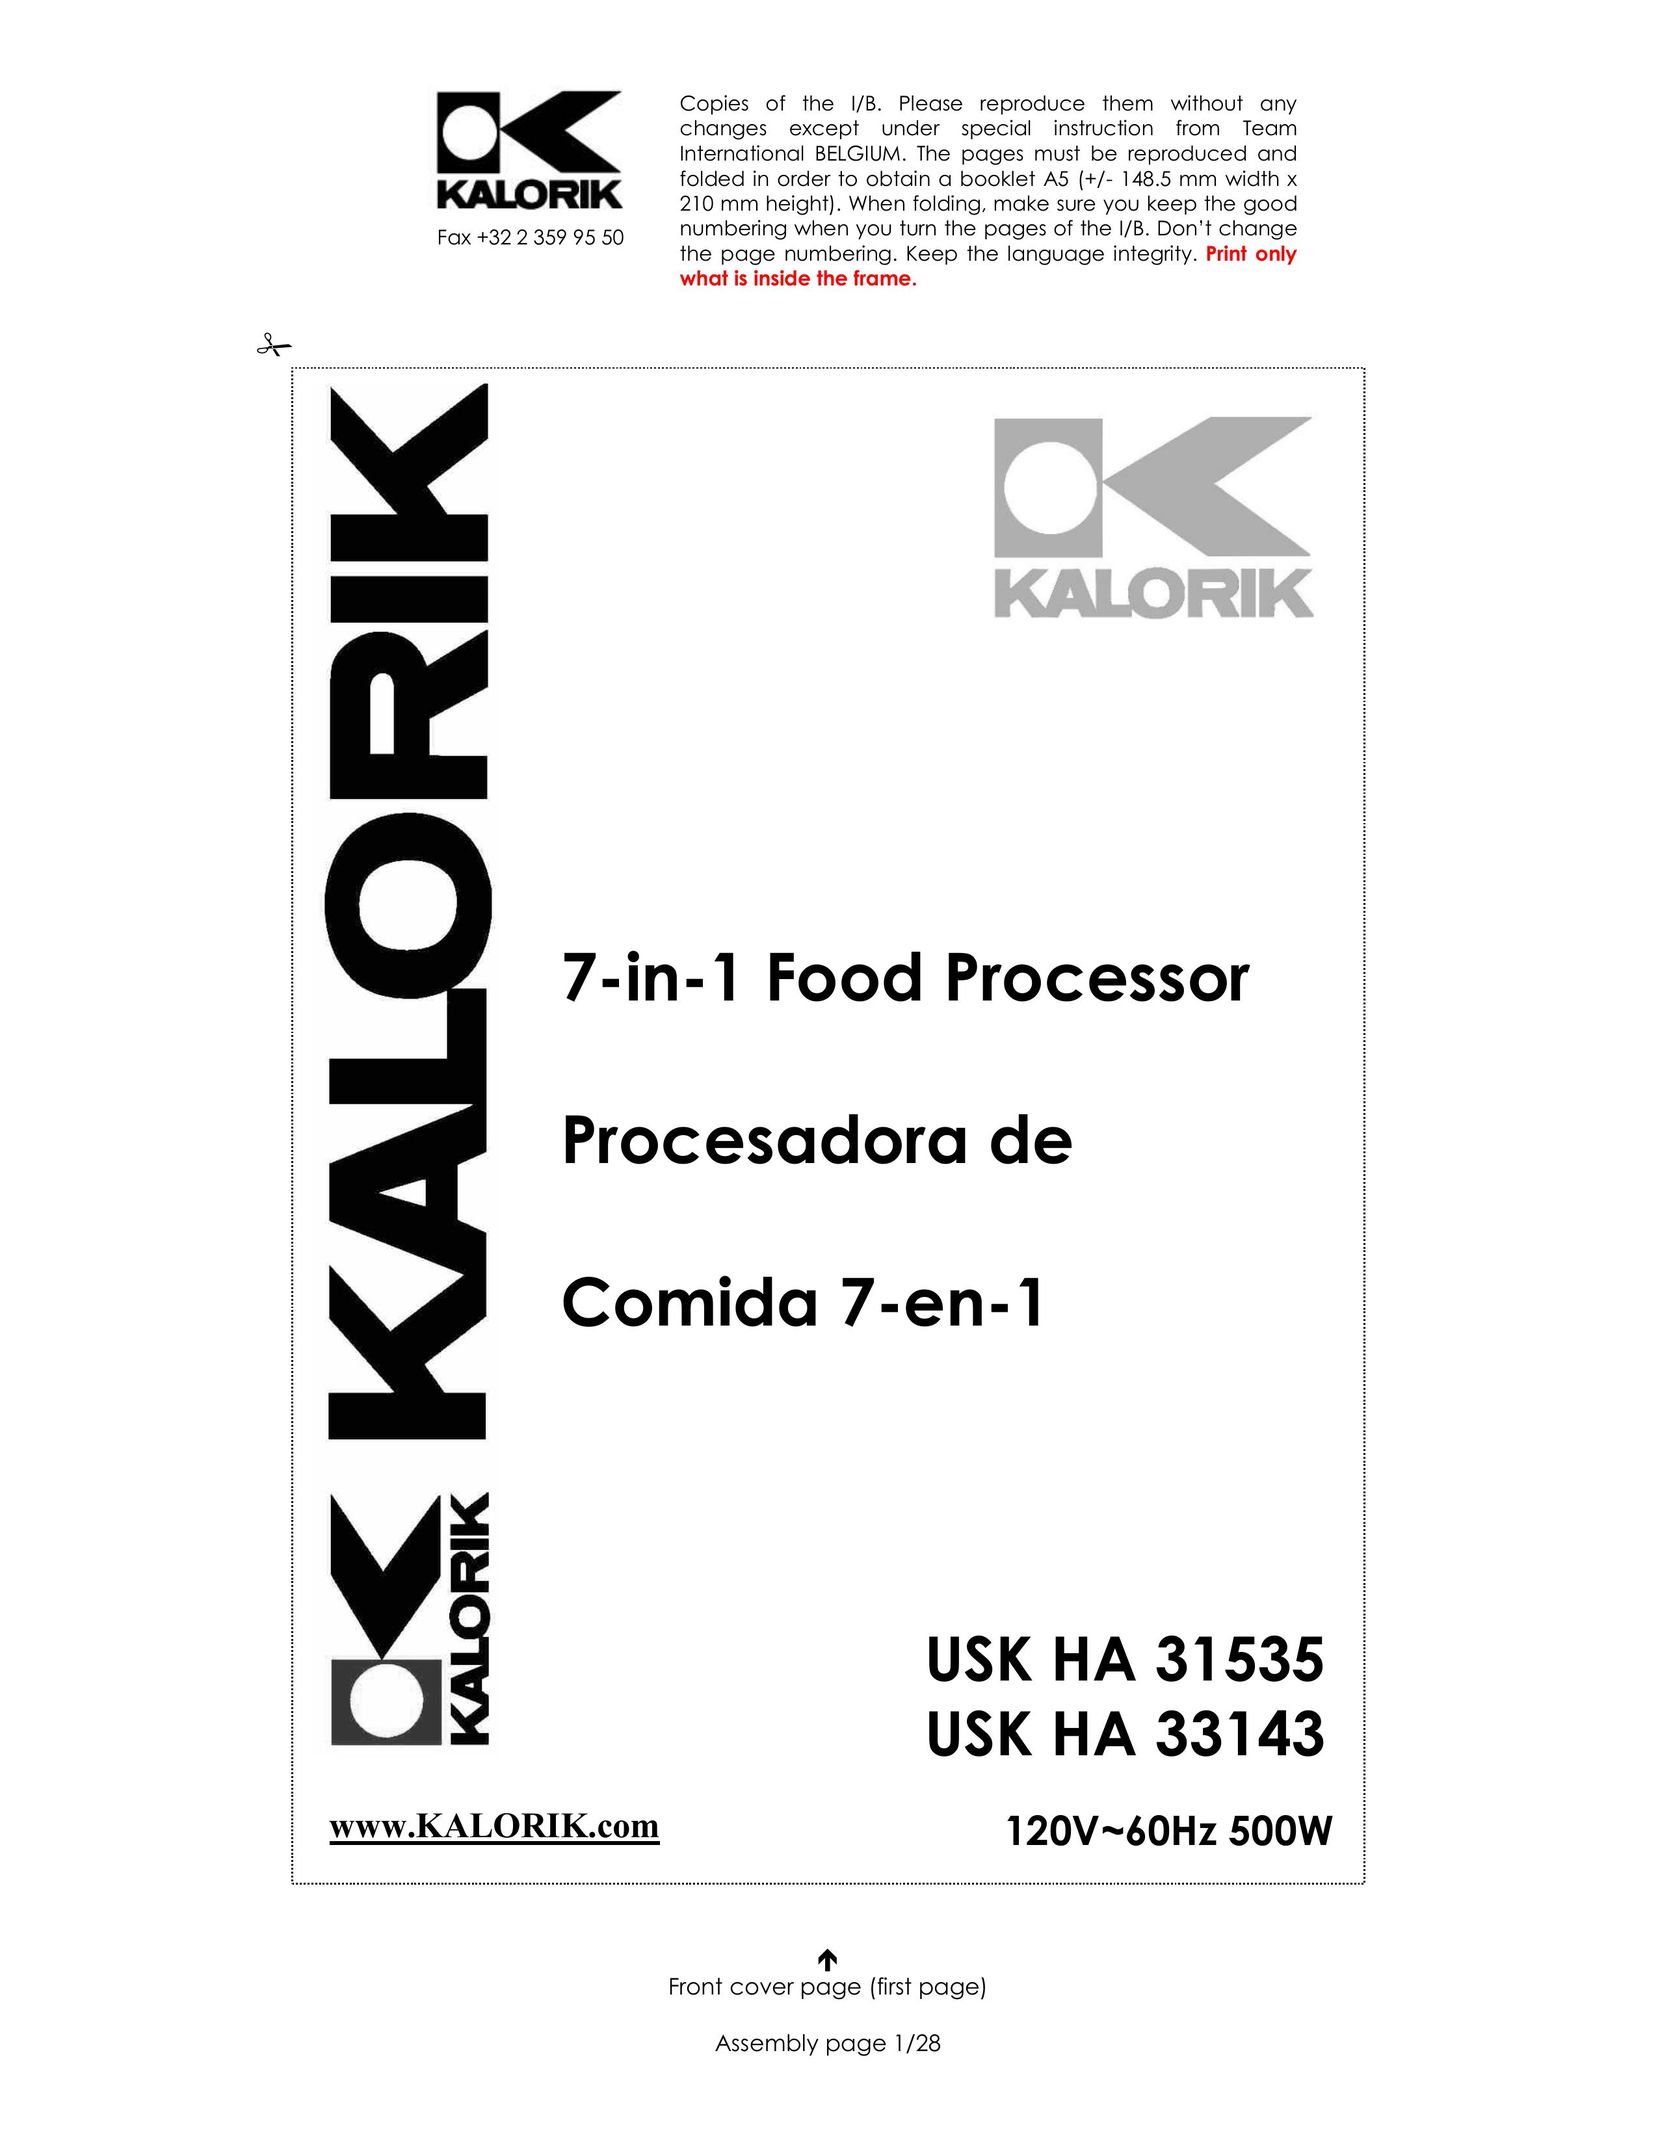 Kalorik USK HA 31535 Food Processor User Manual